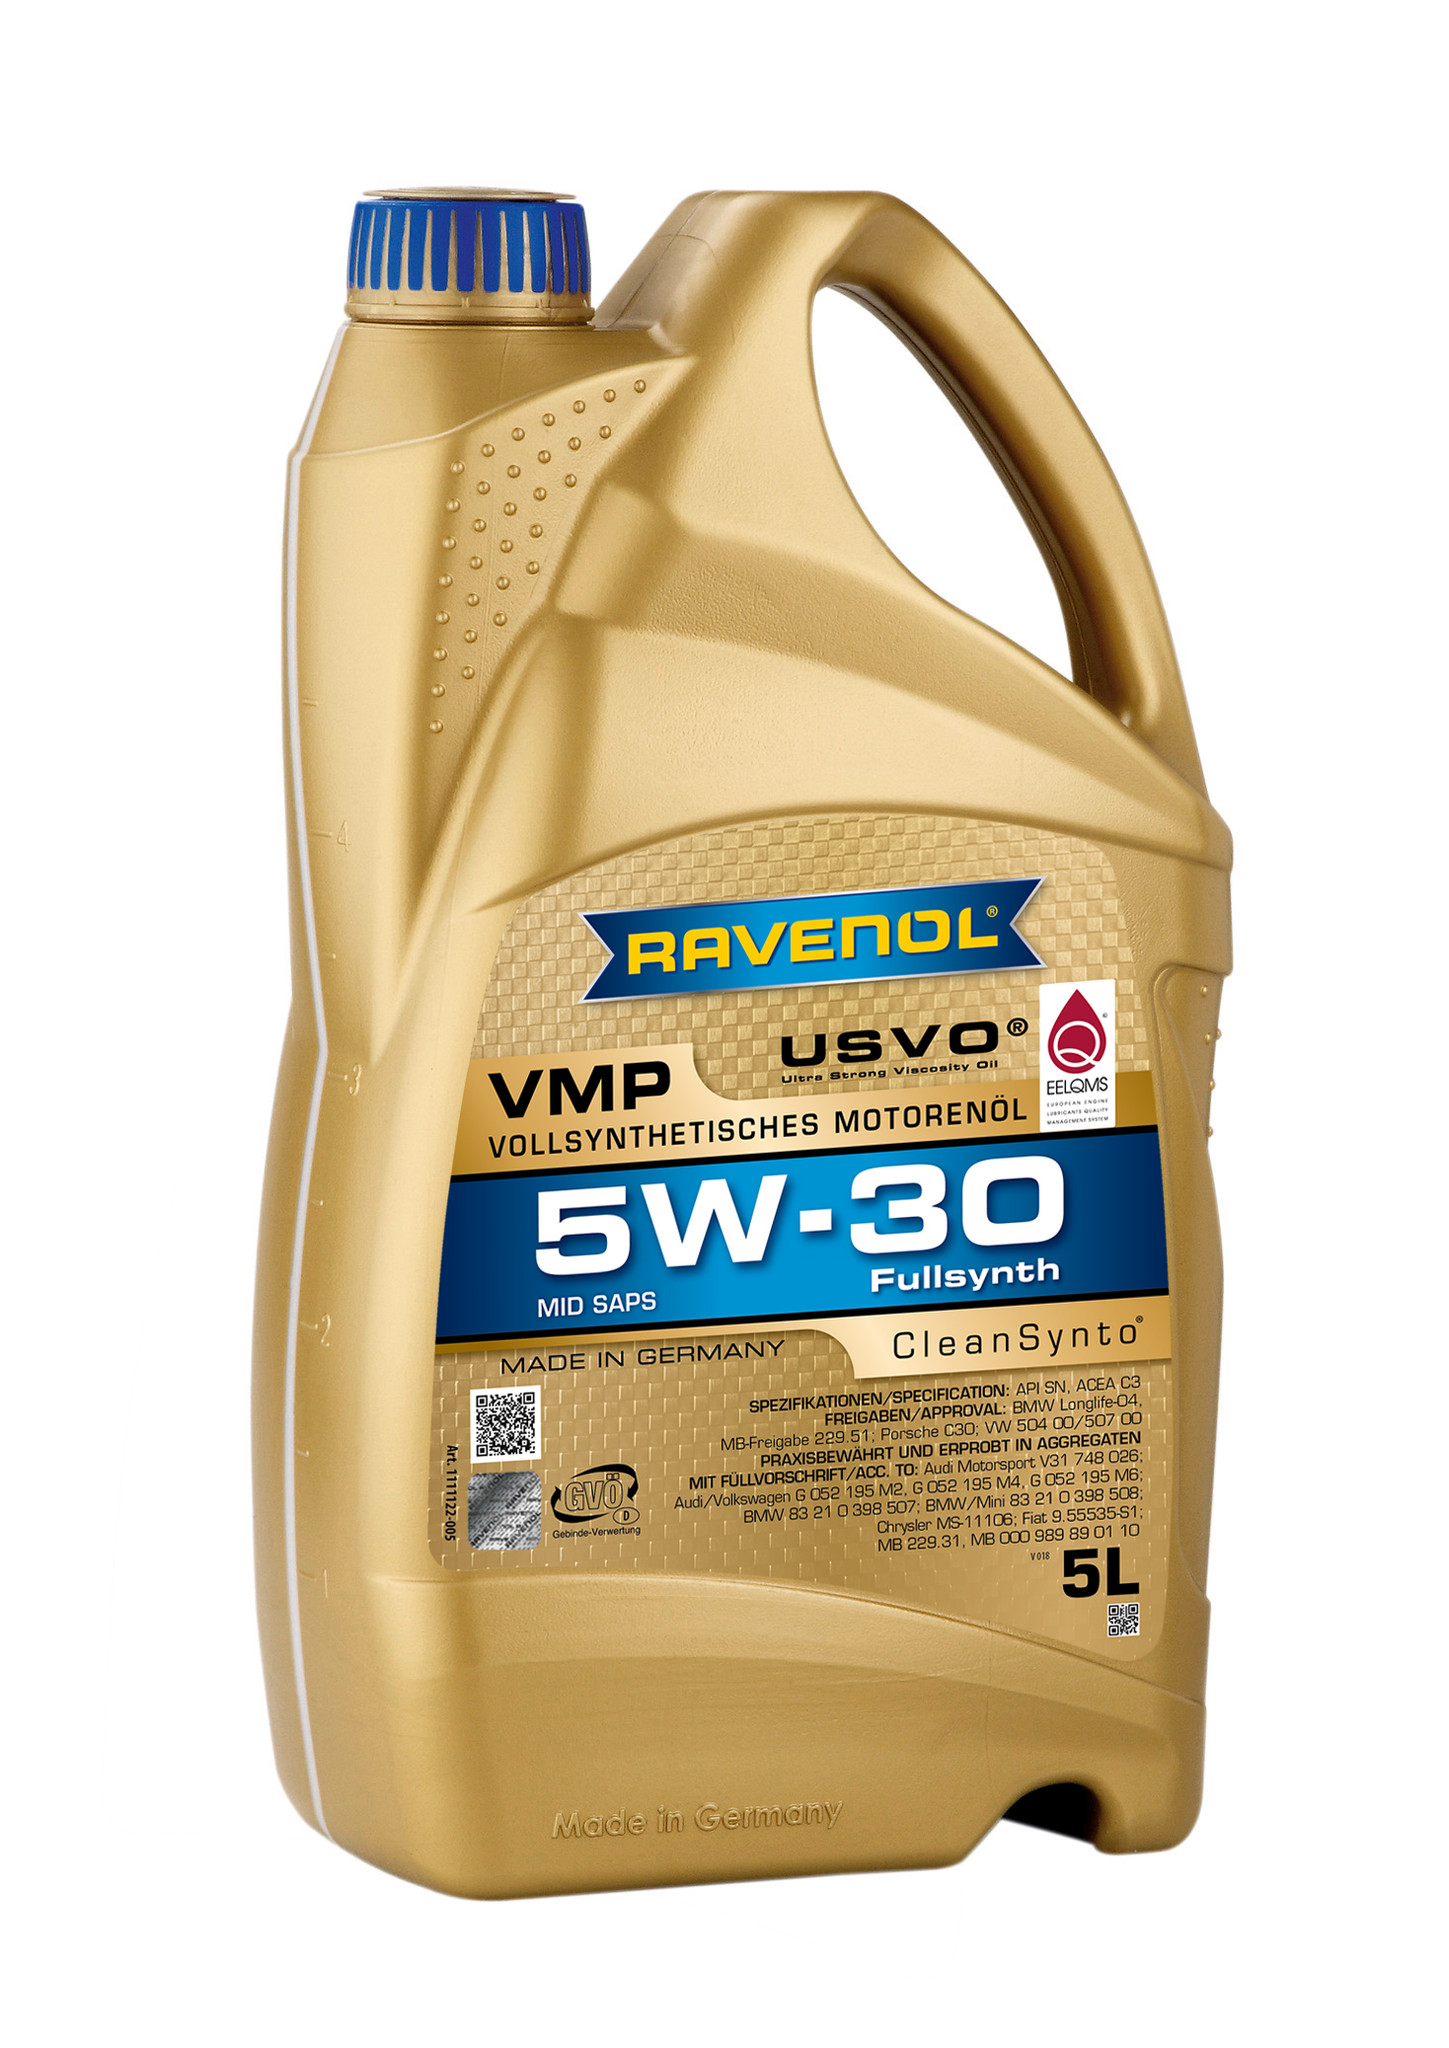 5W-30 Oil in Oil Viscosity 